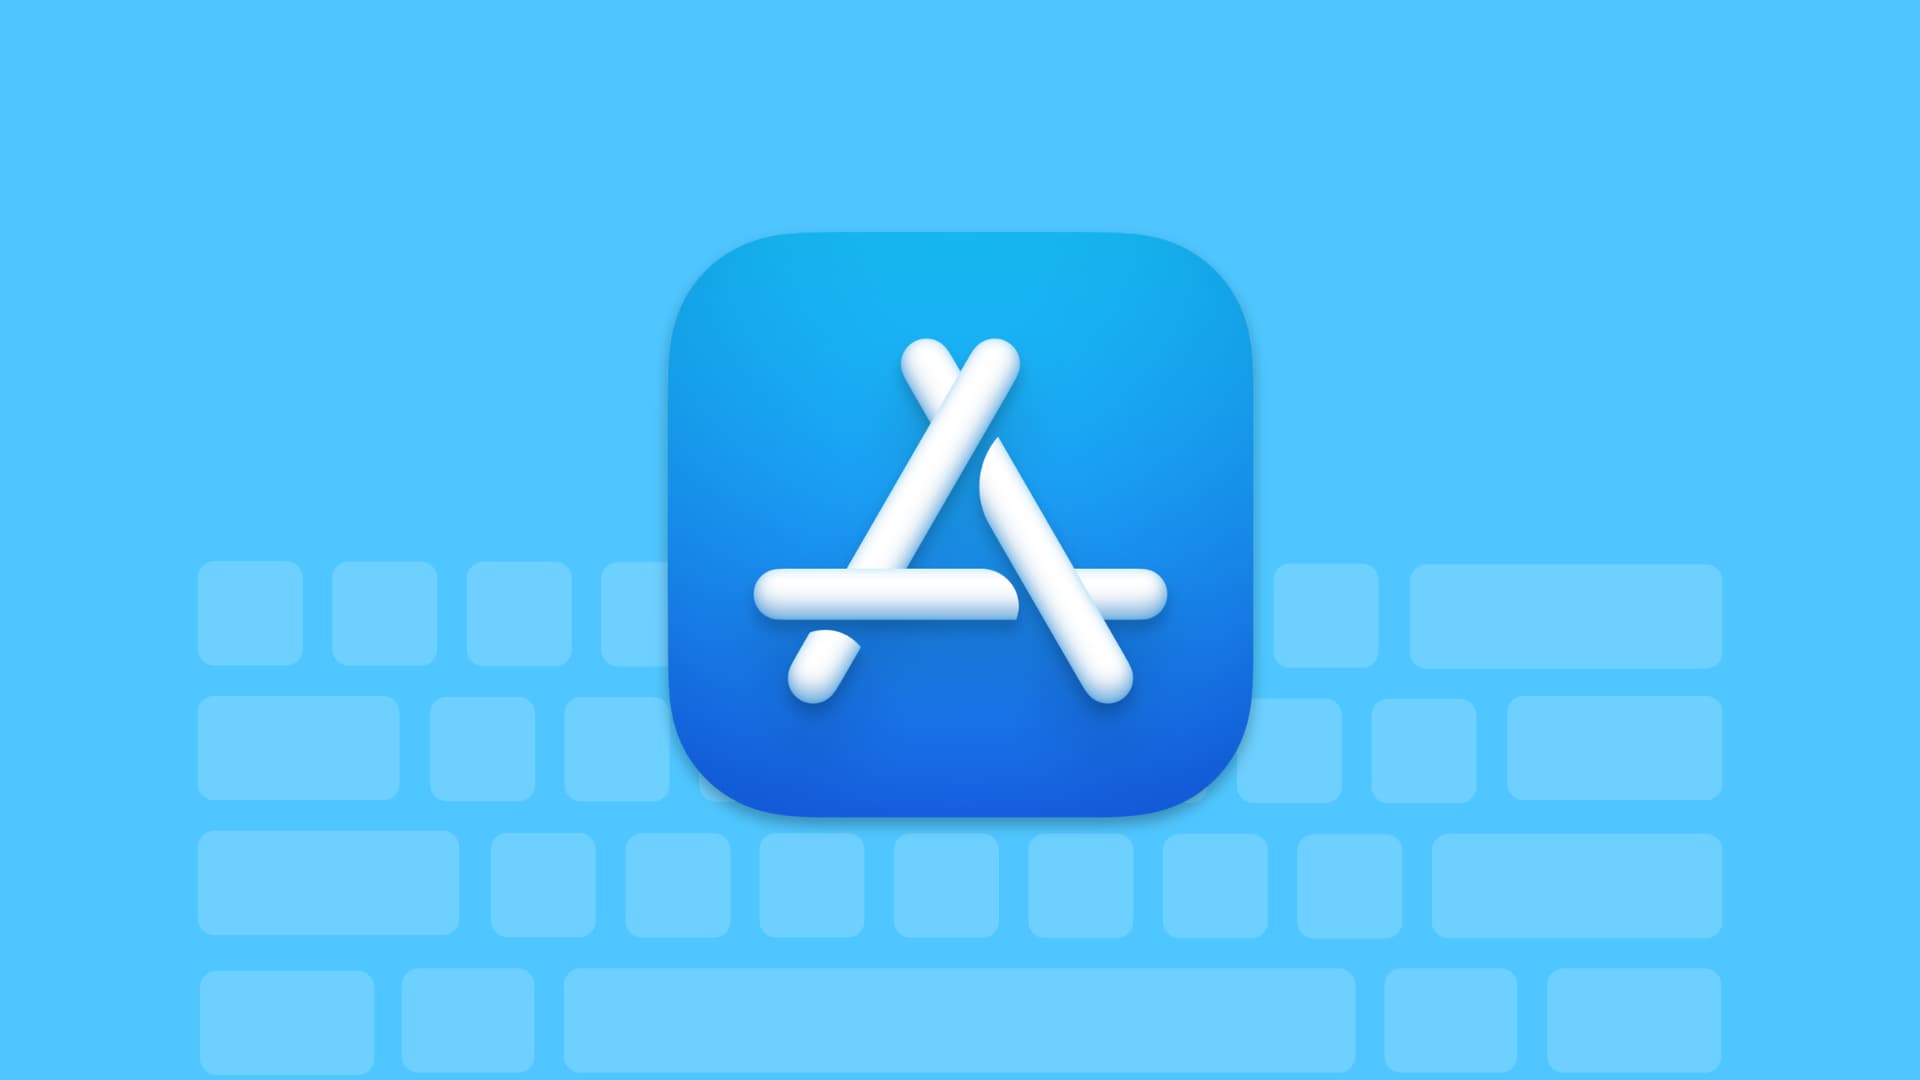 Apple App Store keyboard shortcuts